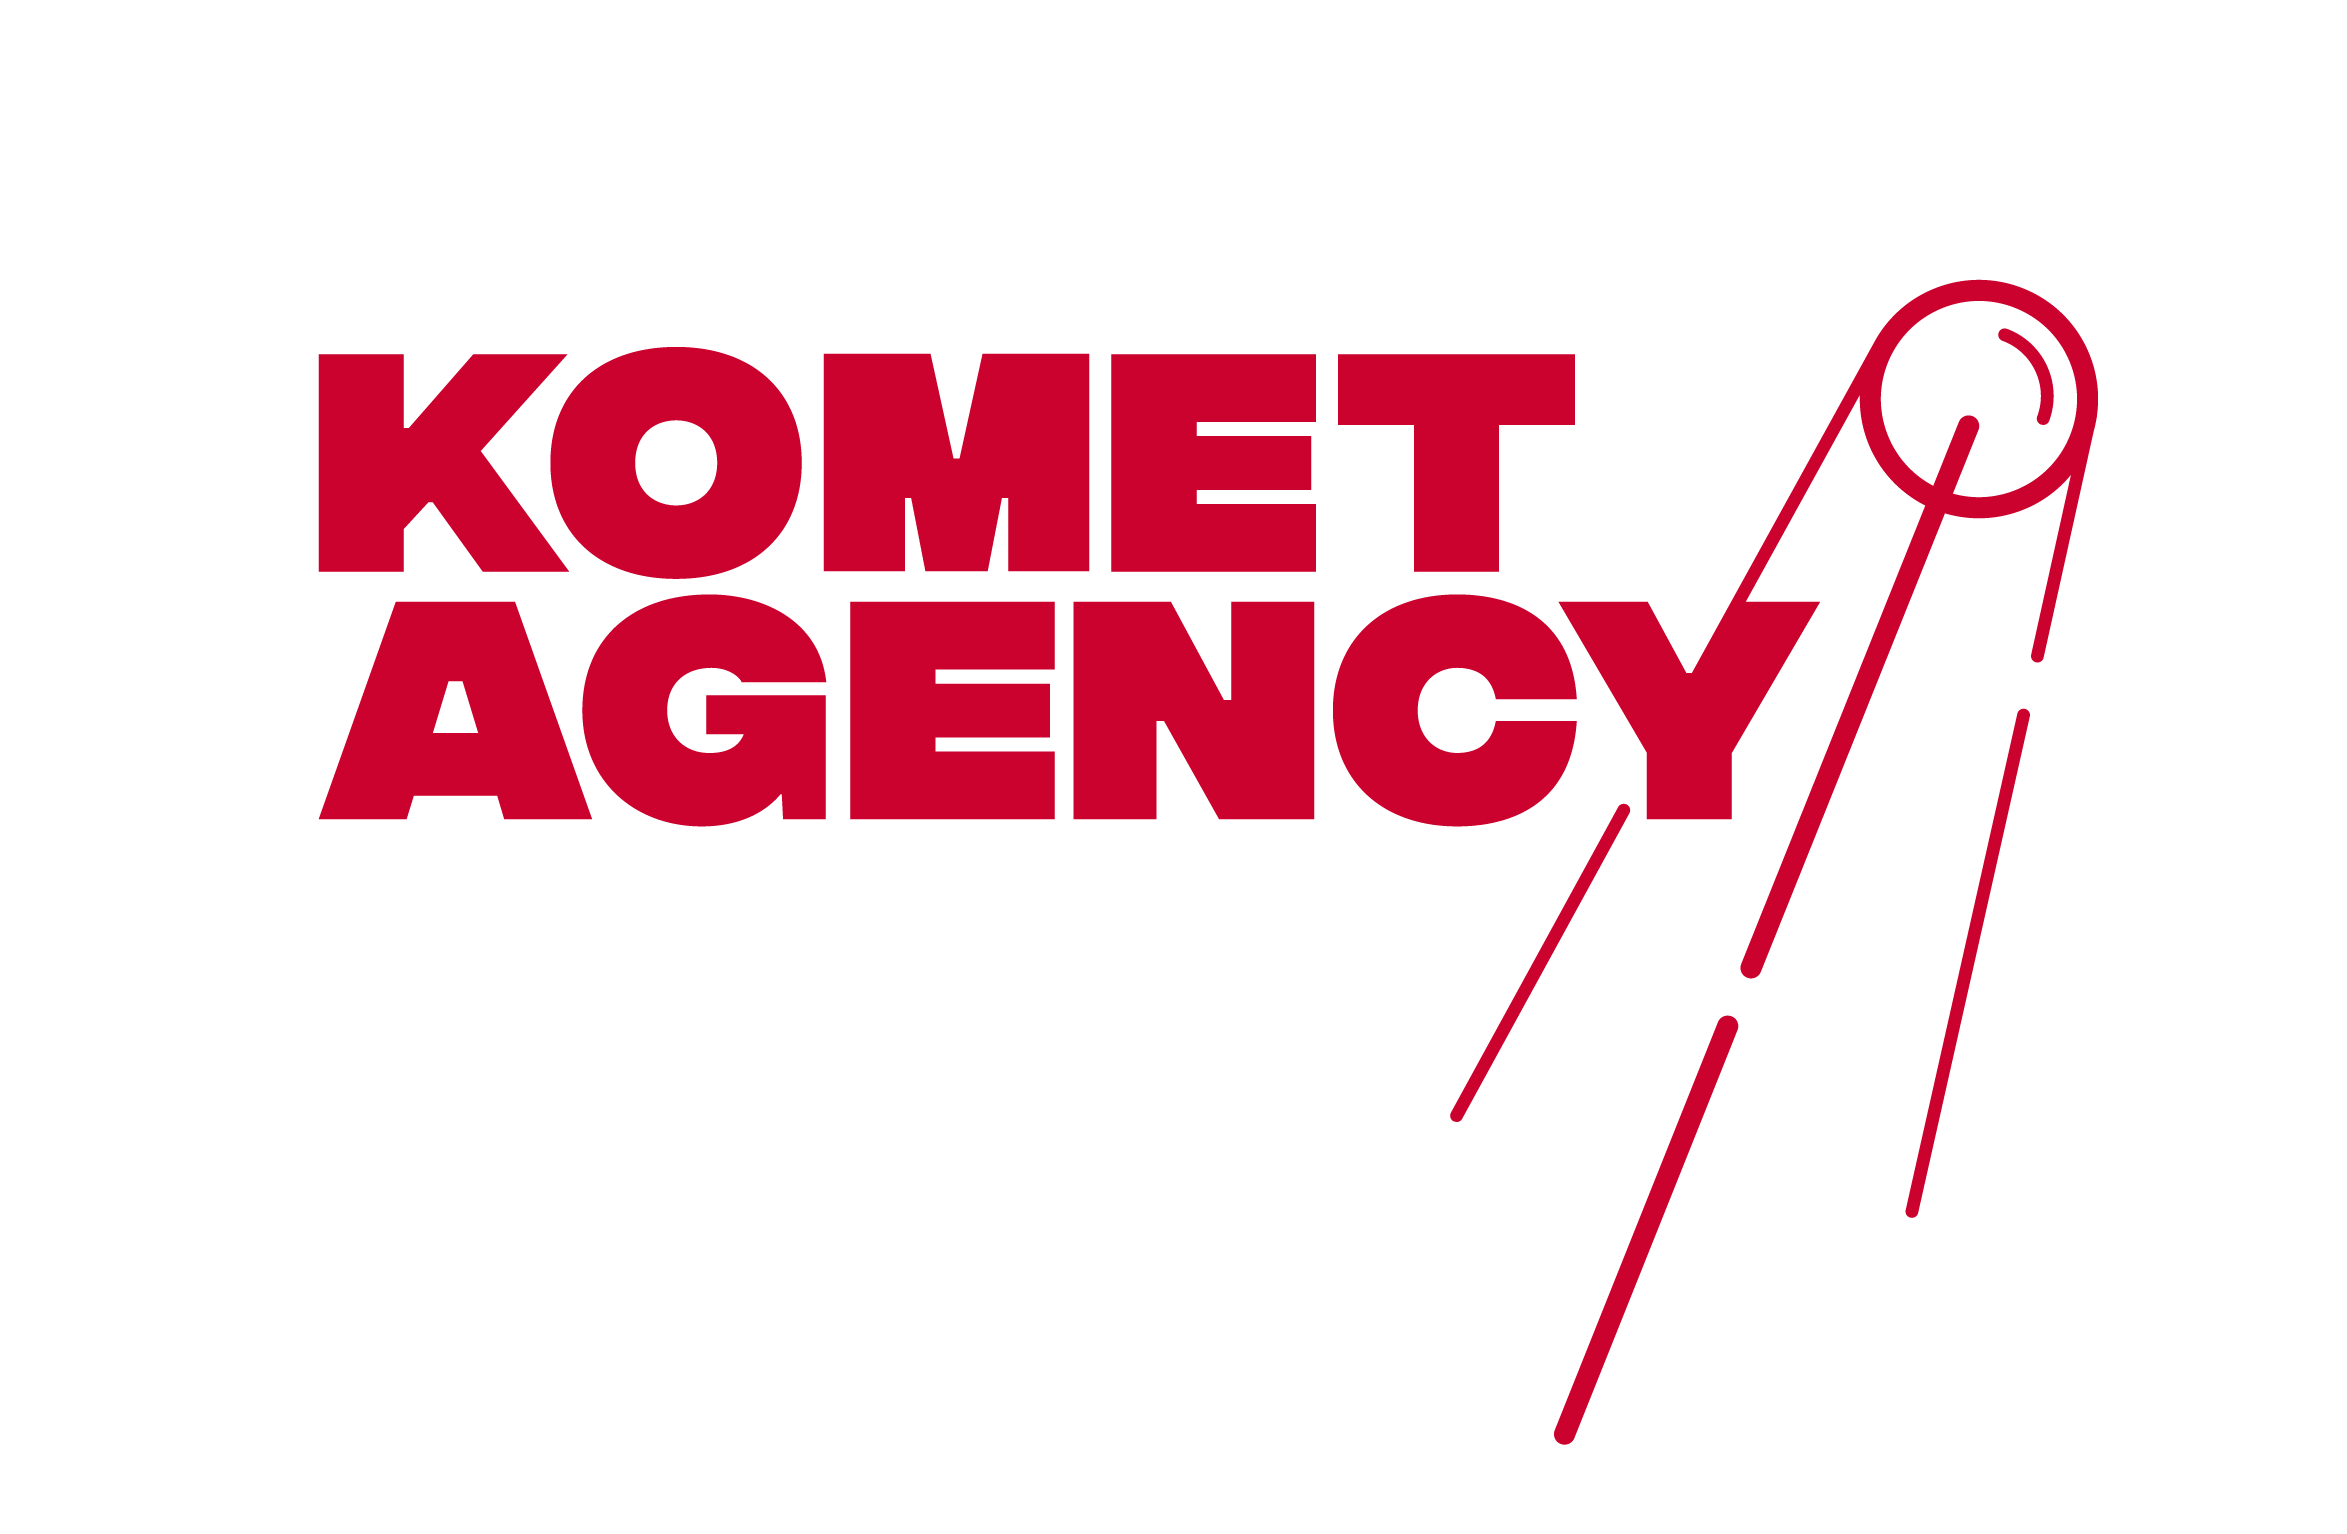 Komet Agency